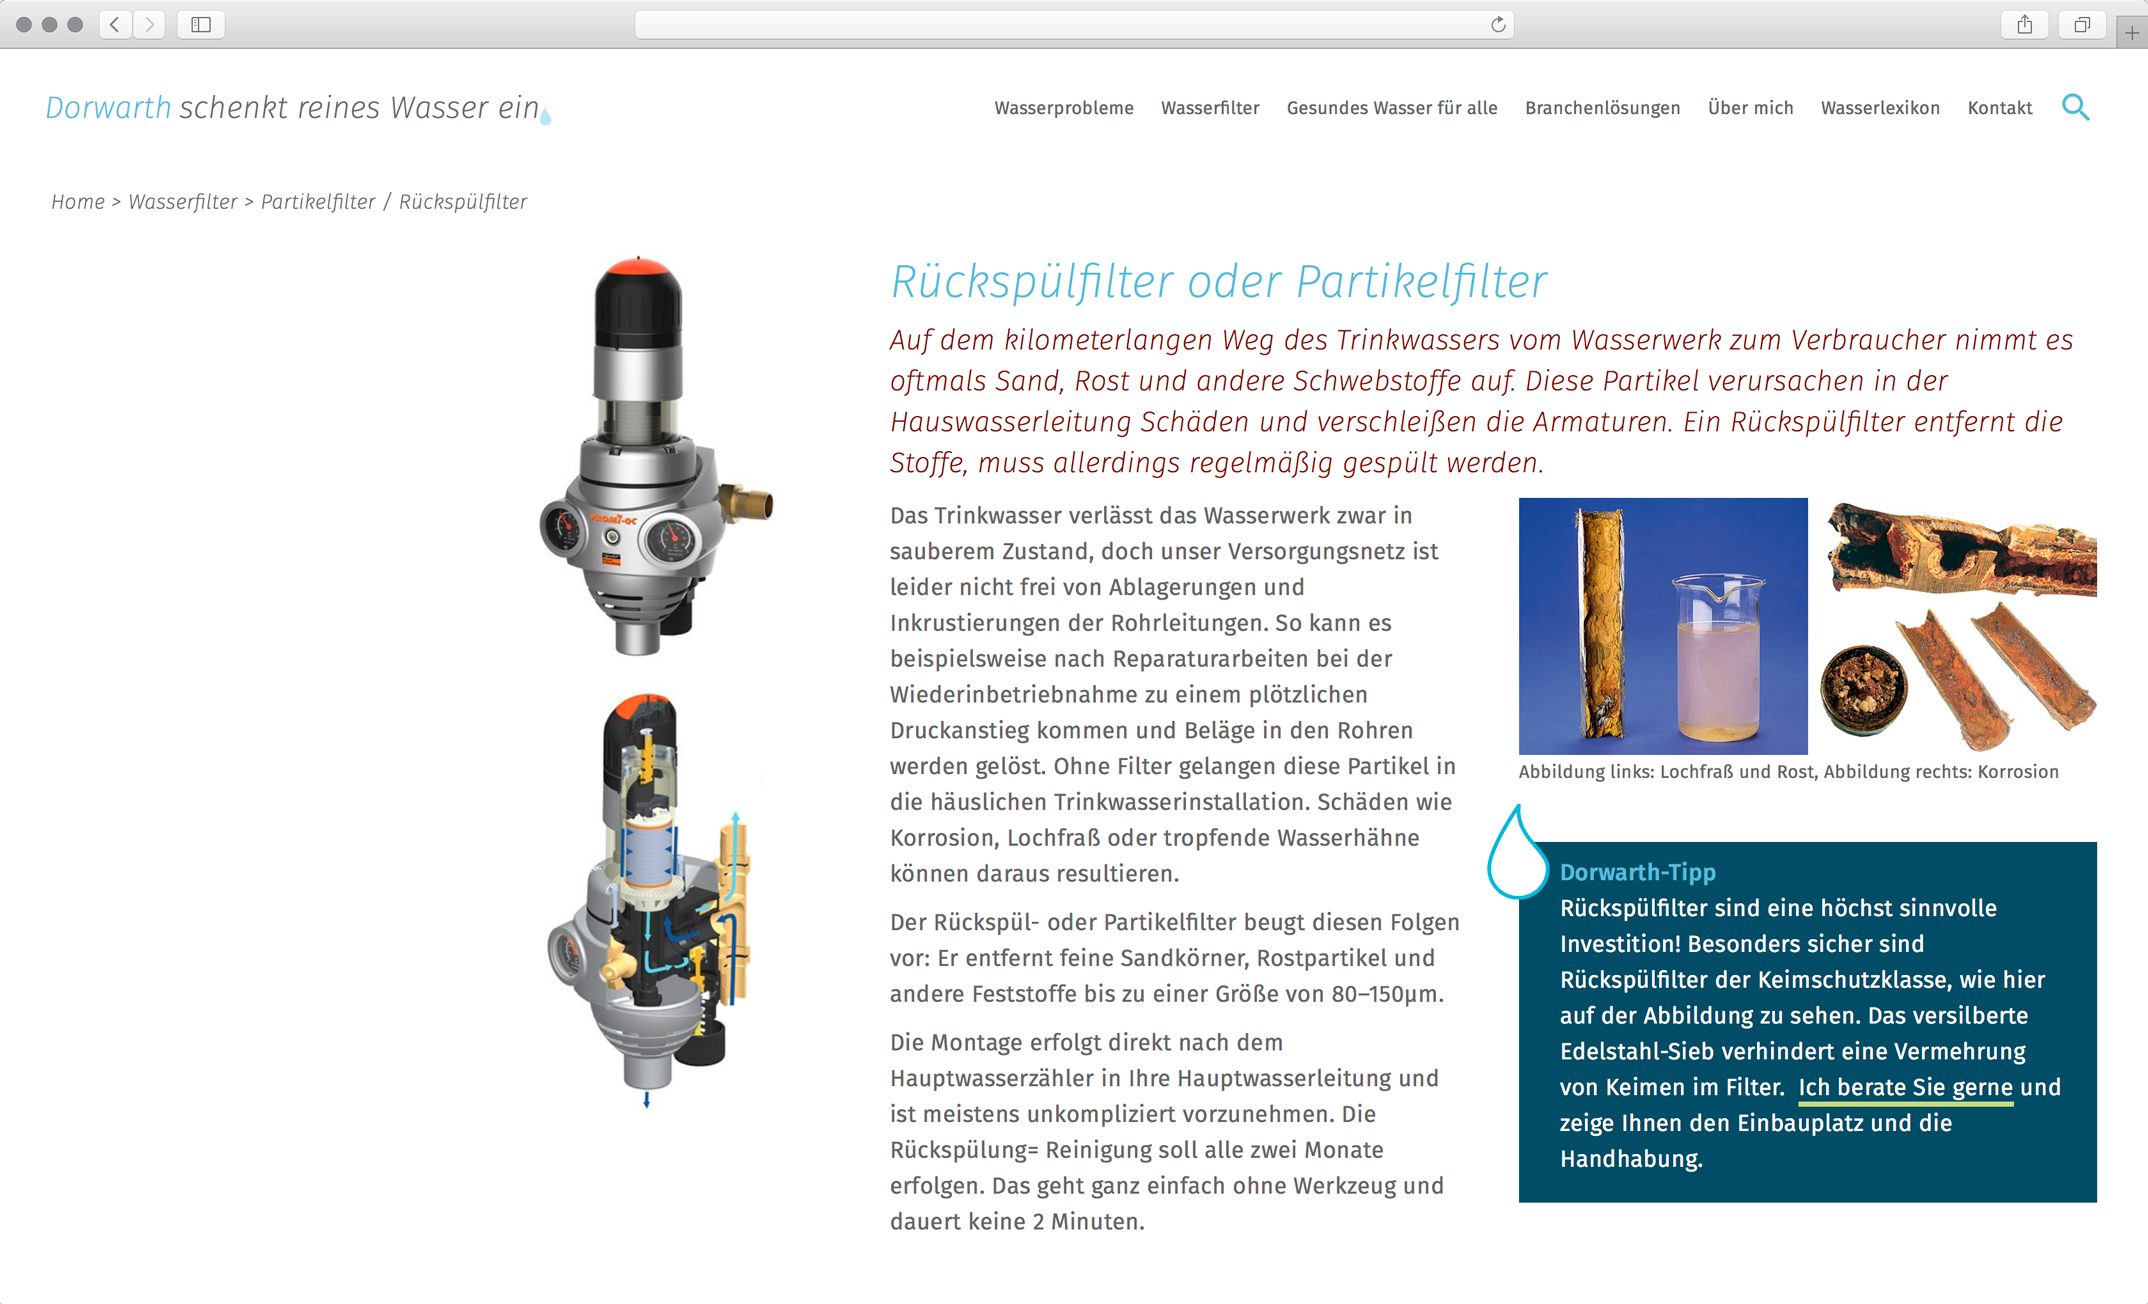 Webdesign, Unterseite Rückspülfilter und Partikelfilter – Corporate Website, Dorwarth Wasserexperte, Besseres Wasser Berlin